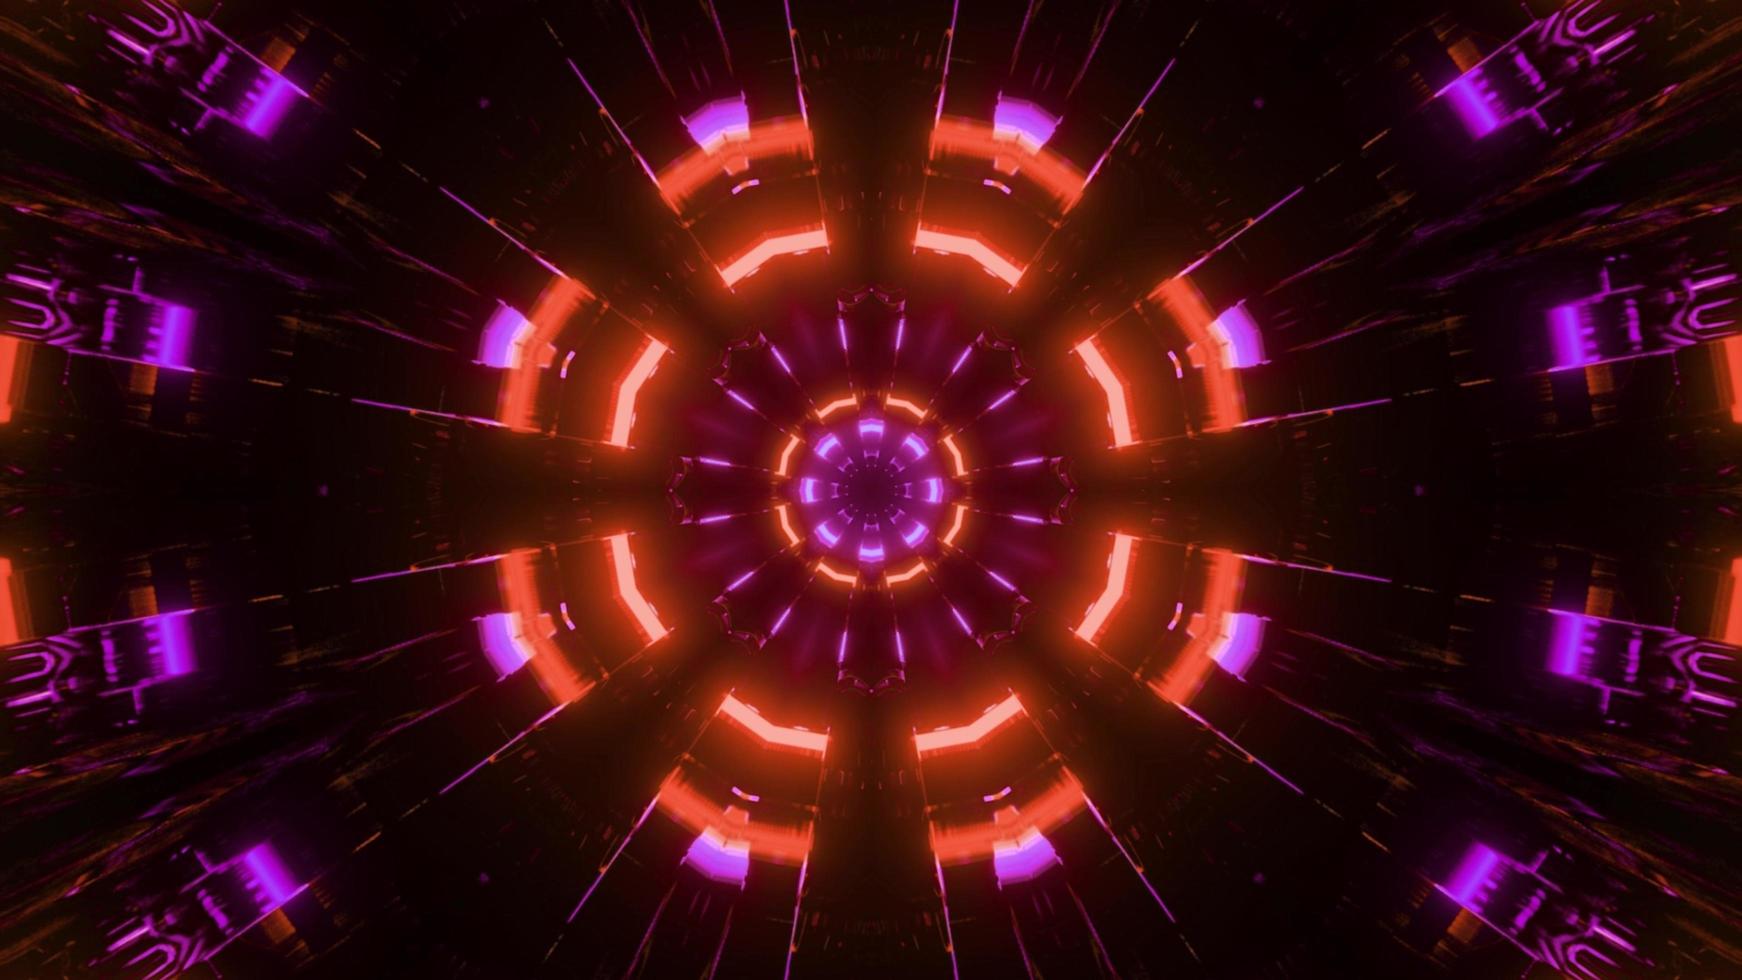 gloeiende symmetrische stralen in 3d illustratie foto